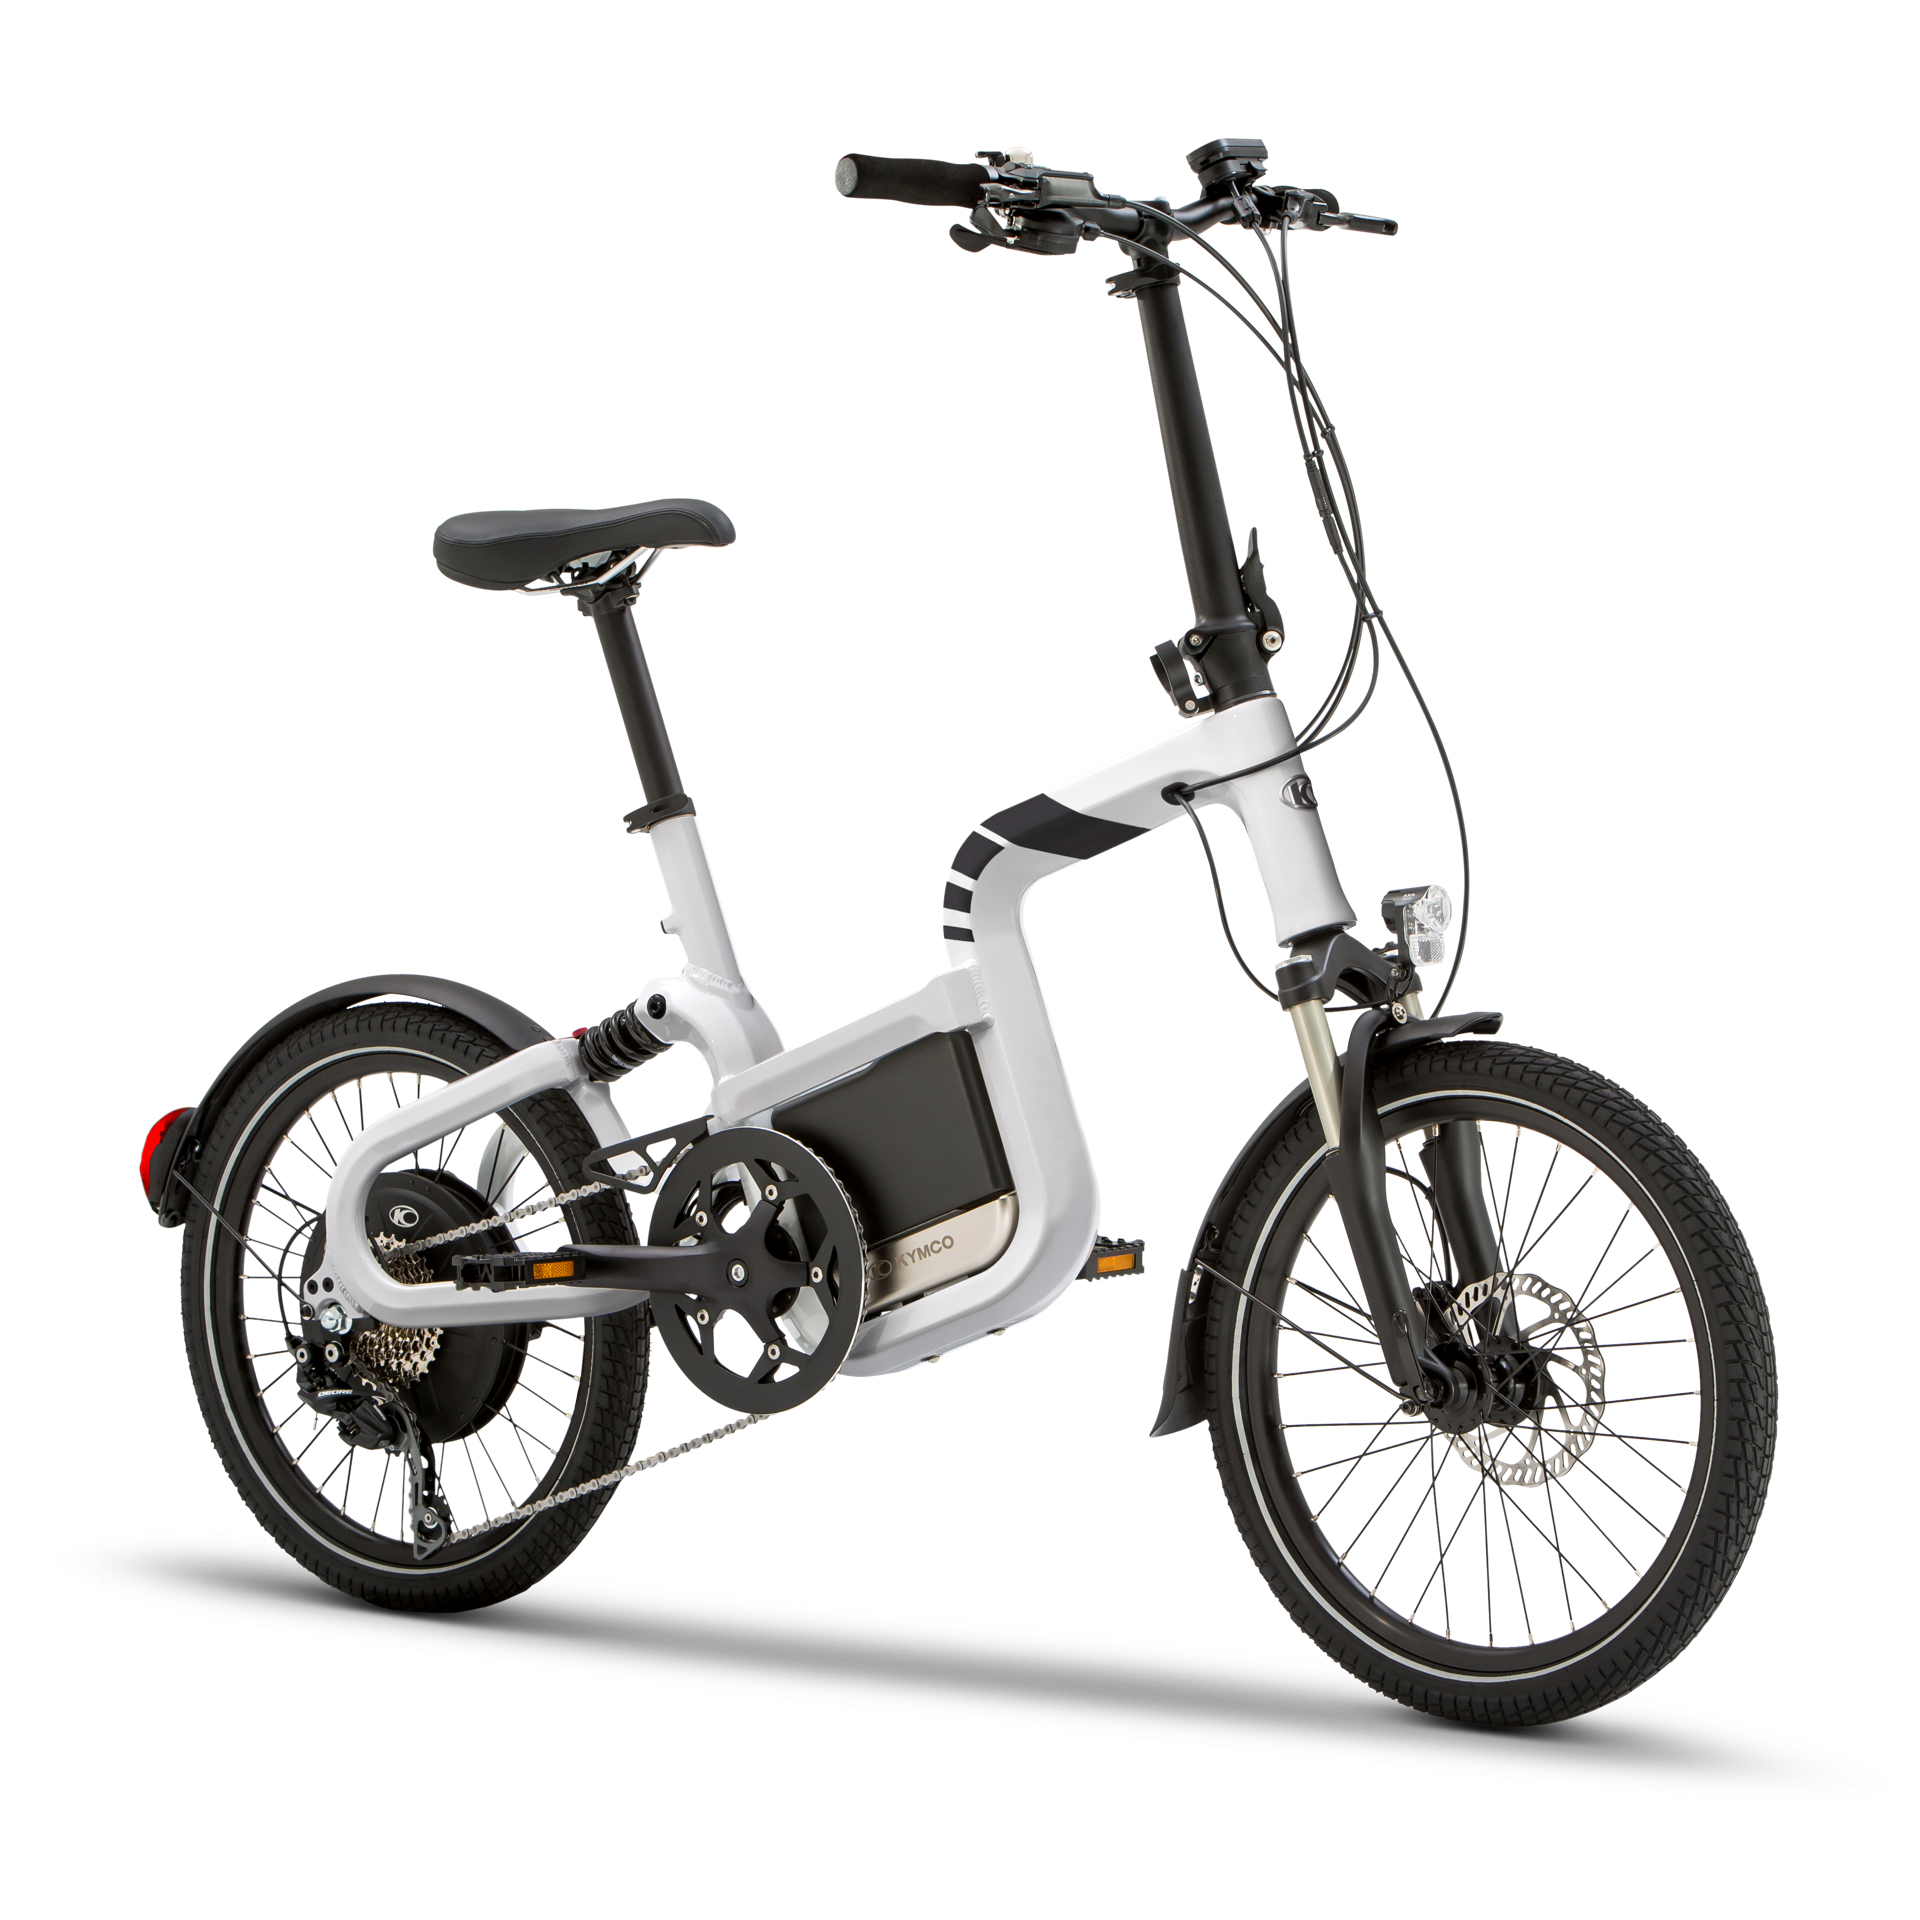 Bici eléctrica KYMCO Q e-bike